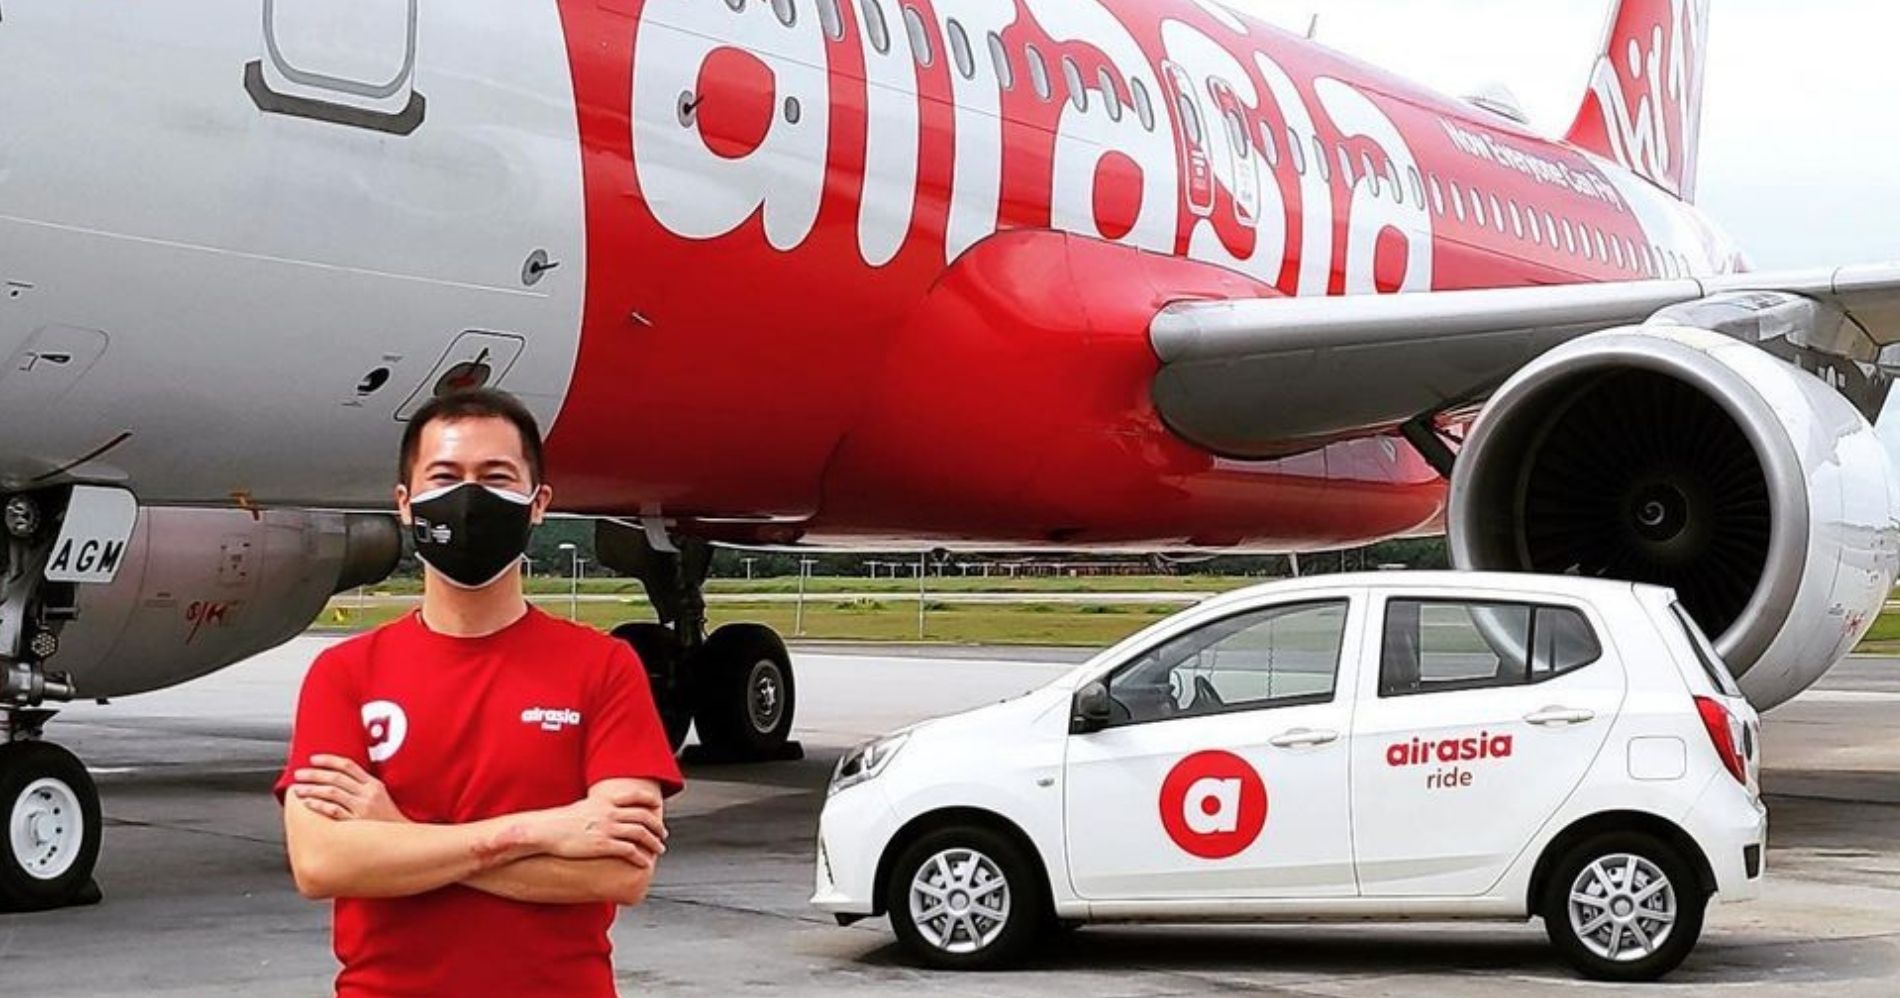 Air Asia Terjun ke Bisnis Ride Hailing Illustration Web Bisnis Muda - Image: Instagram Air Asia